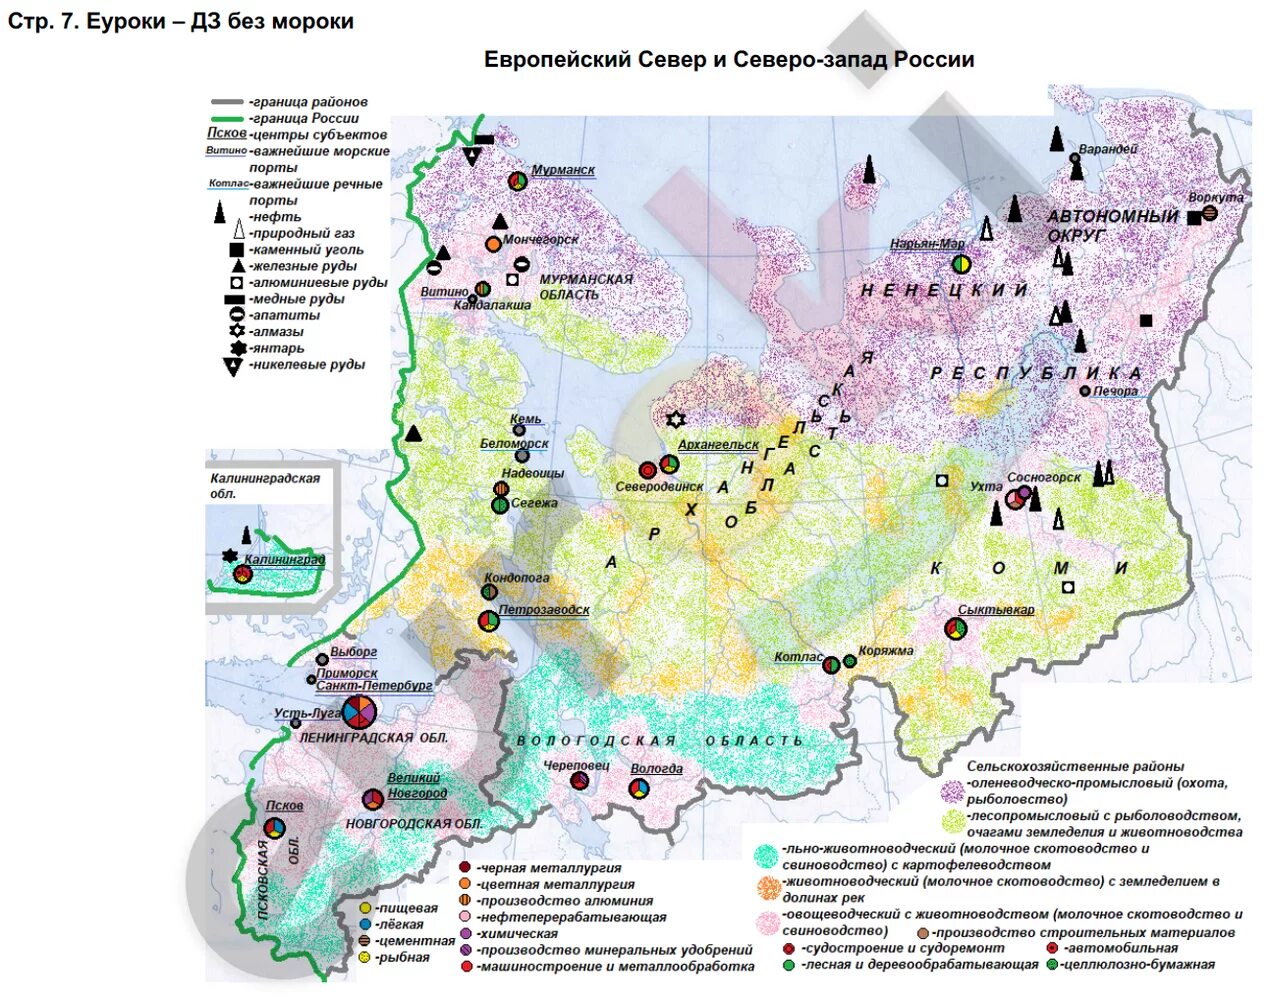 Какие полезные ископаемые европейского севера. Карта европейского севера и Северо-Запада России контурная карта.